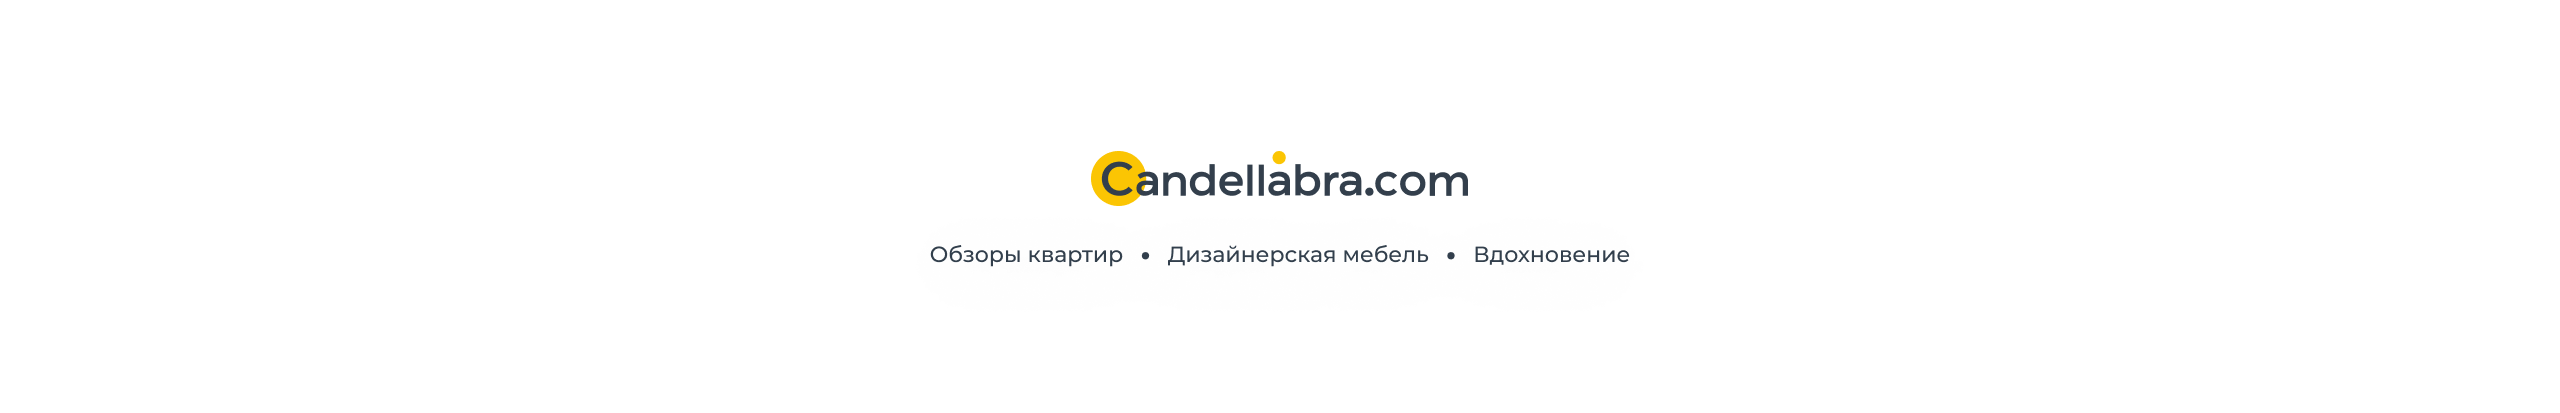 CANDELLABRA .COM's profile banner